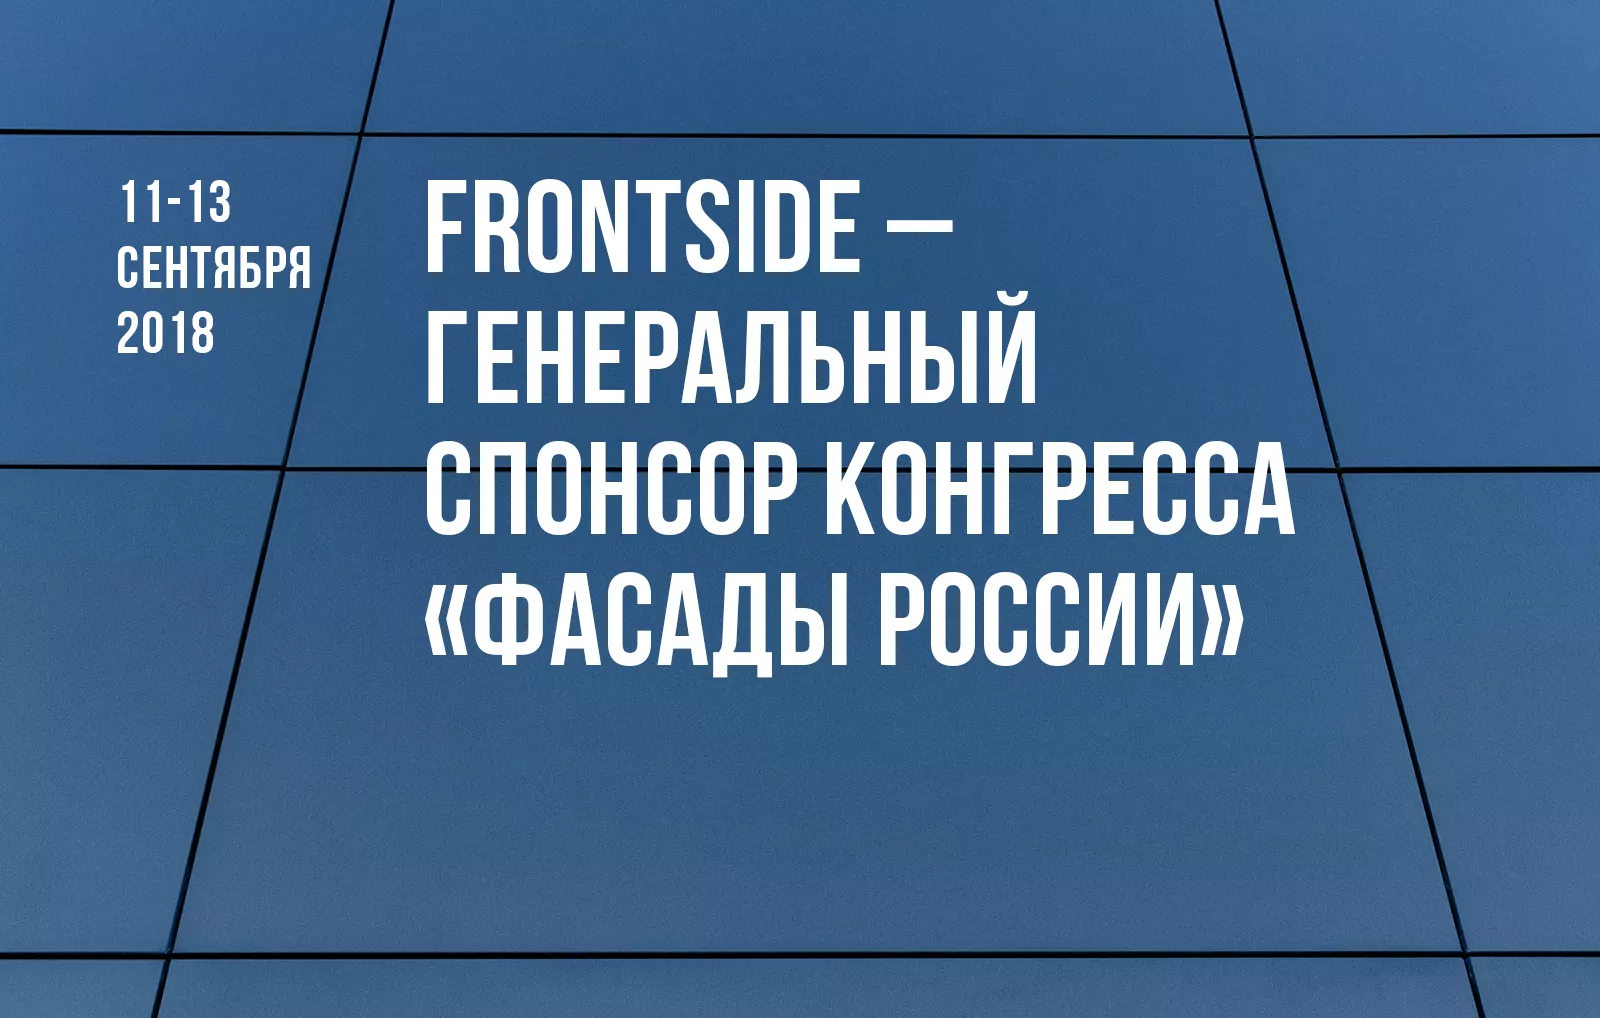 Frontside — генеральный спонсор конгресса «Фасады России»